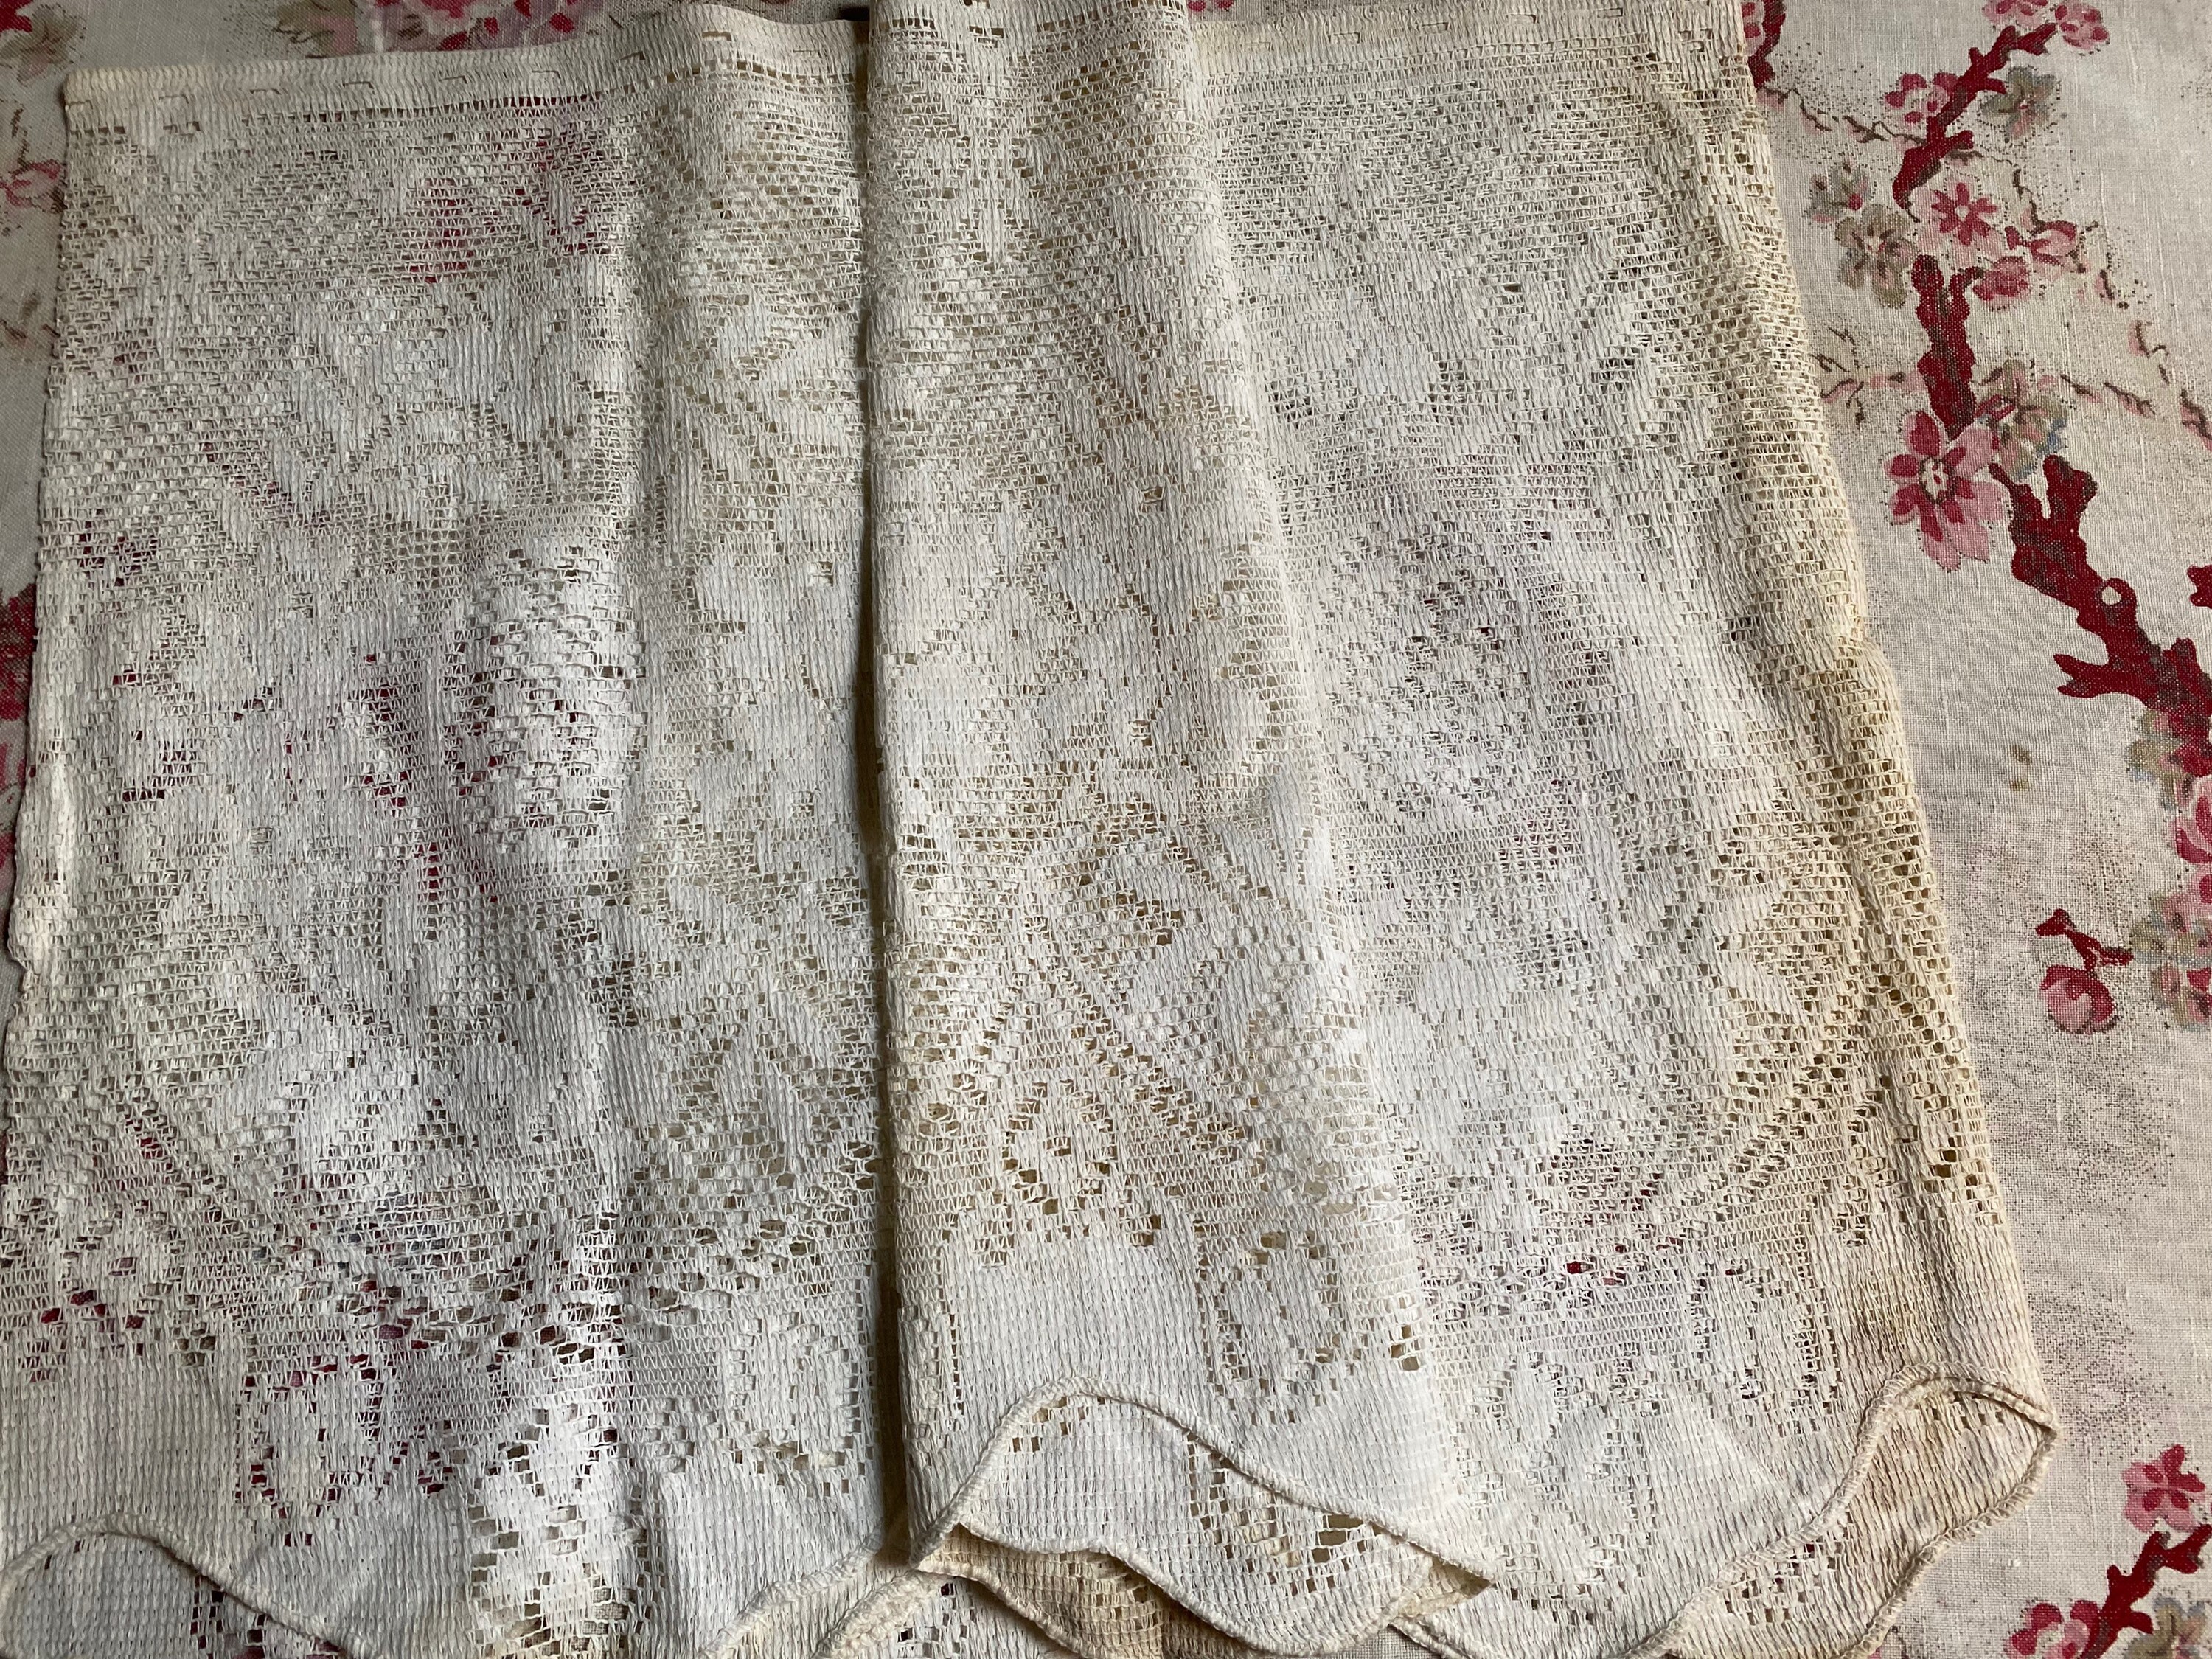 Vintage Rue de France whit cotton lace brise-bise cafe curtain valance 23" drop 